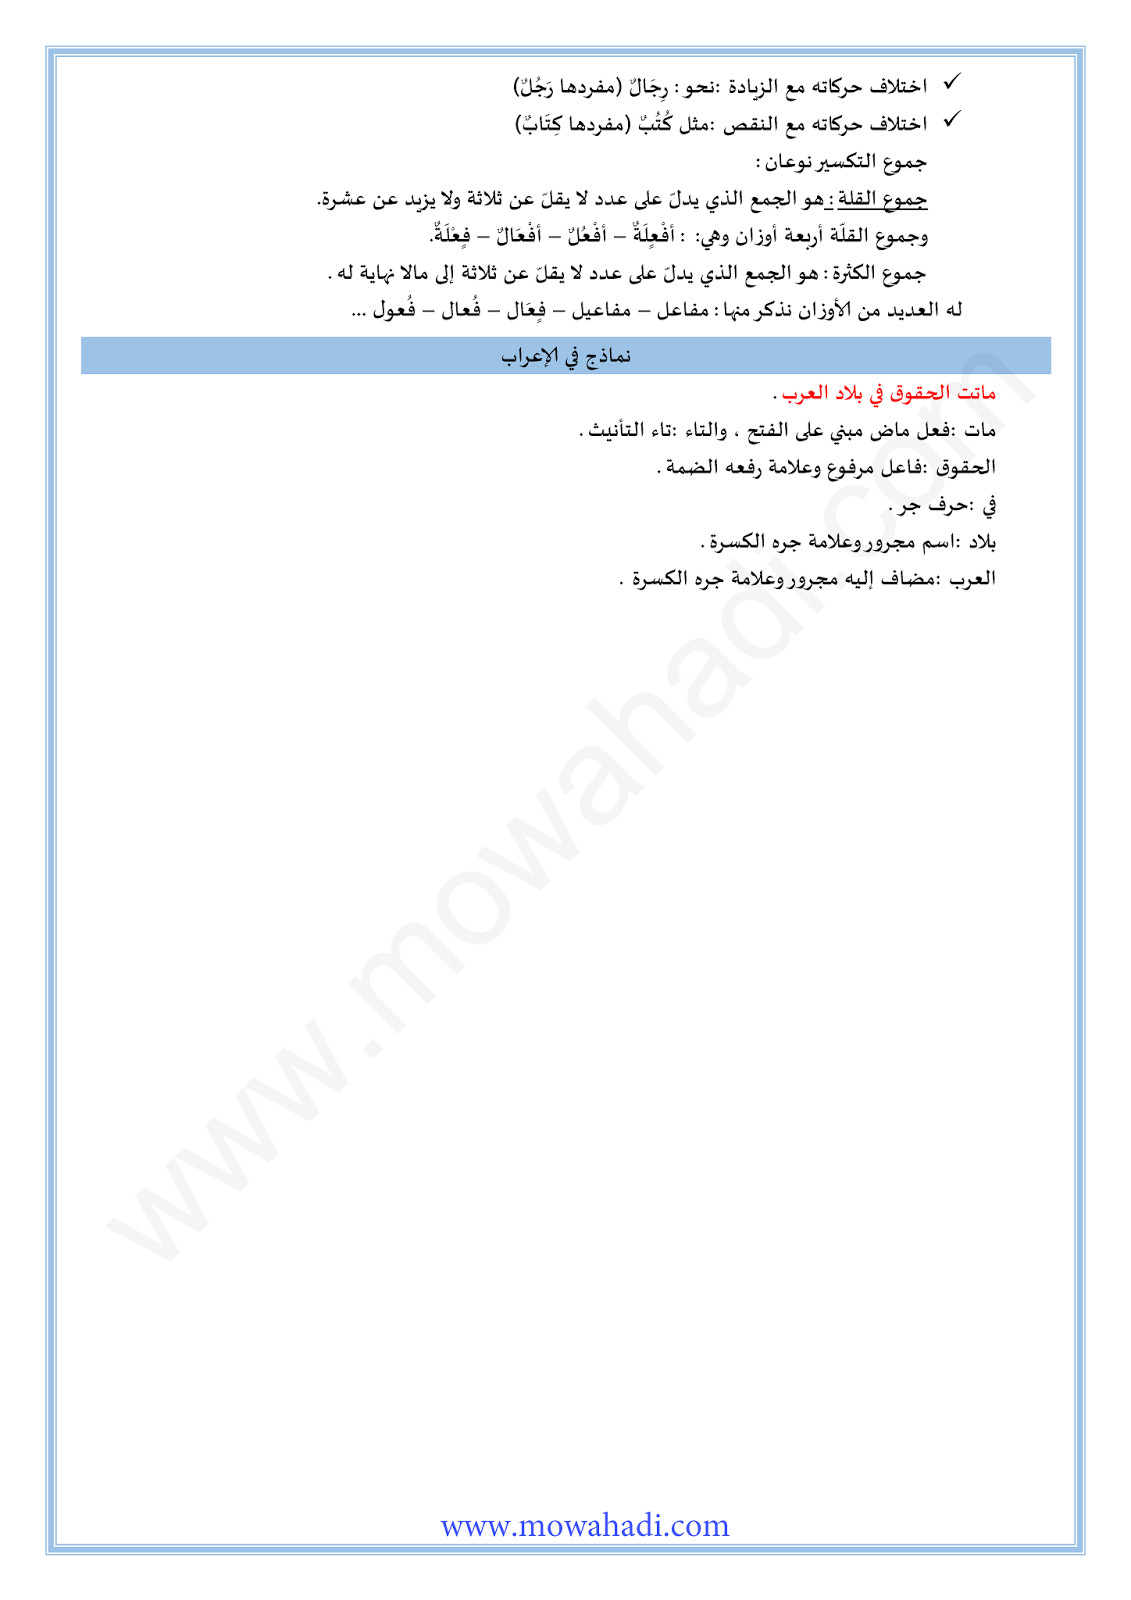 الدرس اللغوي جمع التكسير للسنة الثانية اعدادي في مادة اللغة العربية 4-cours-loghawi2_002